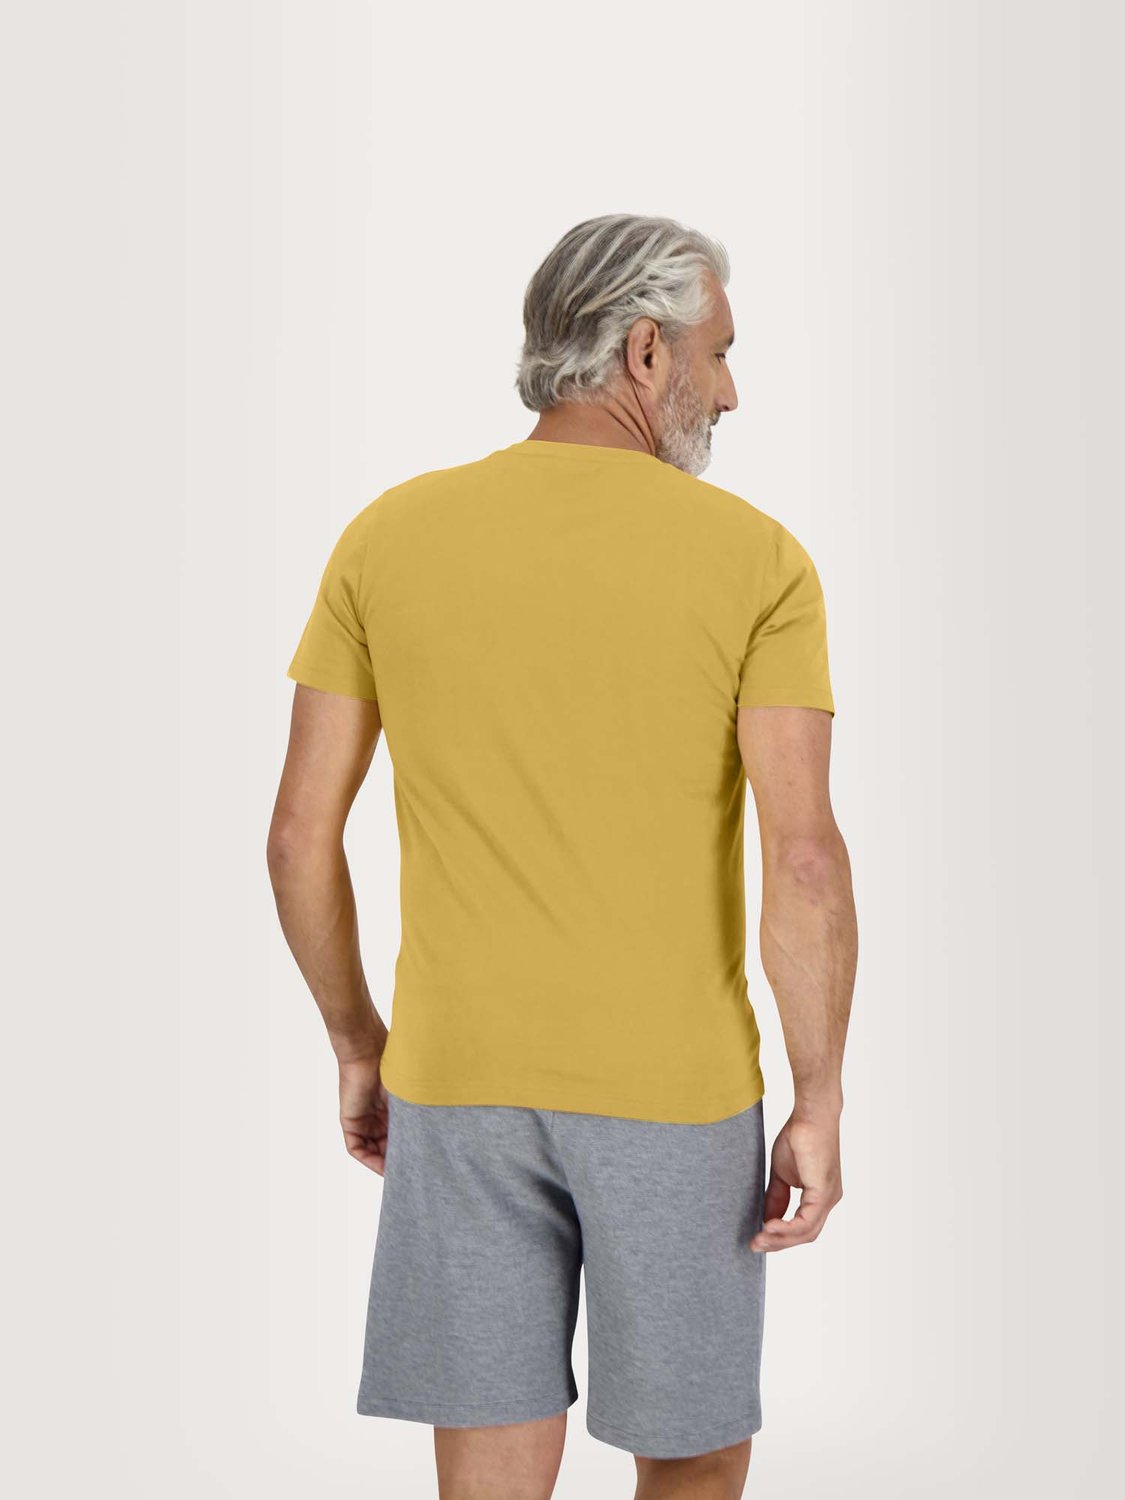 Tee Shirt Homme Coton Biologique Jaune